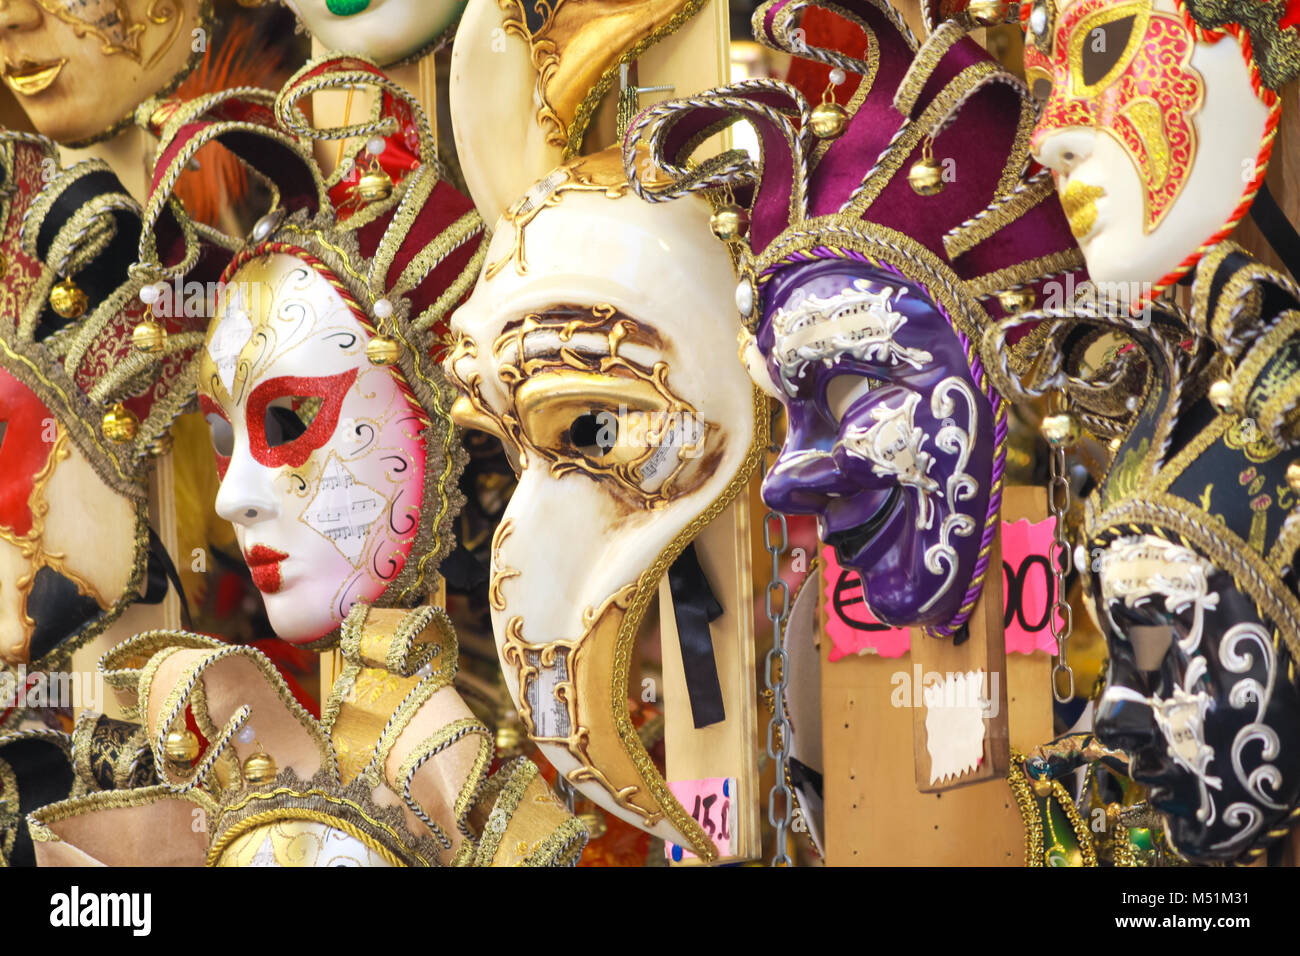 Firenze, Italia - 5 Maggio 2011: decorative maschera di Carnevale PER LA VENDITA IN UN MERCATO DELLE PULCI A FIRENZE, Italia Foto Stock